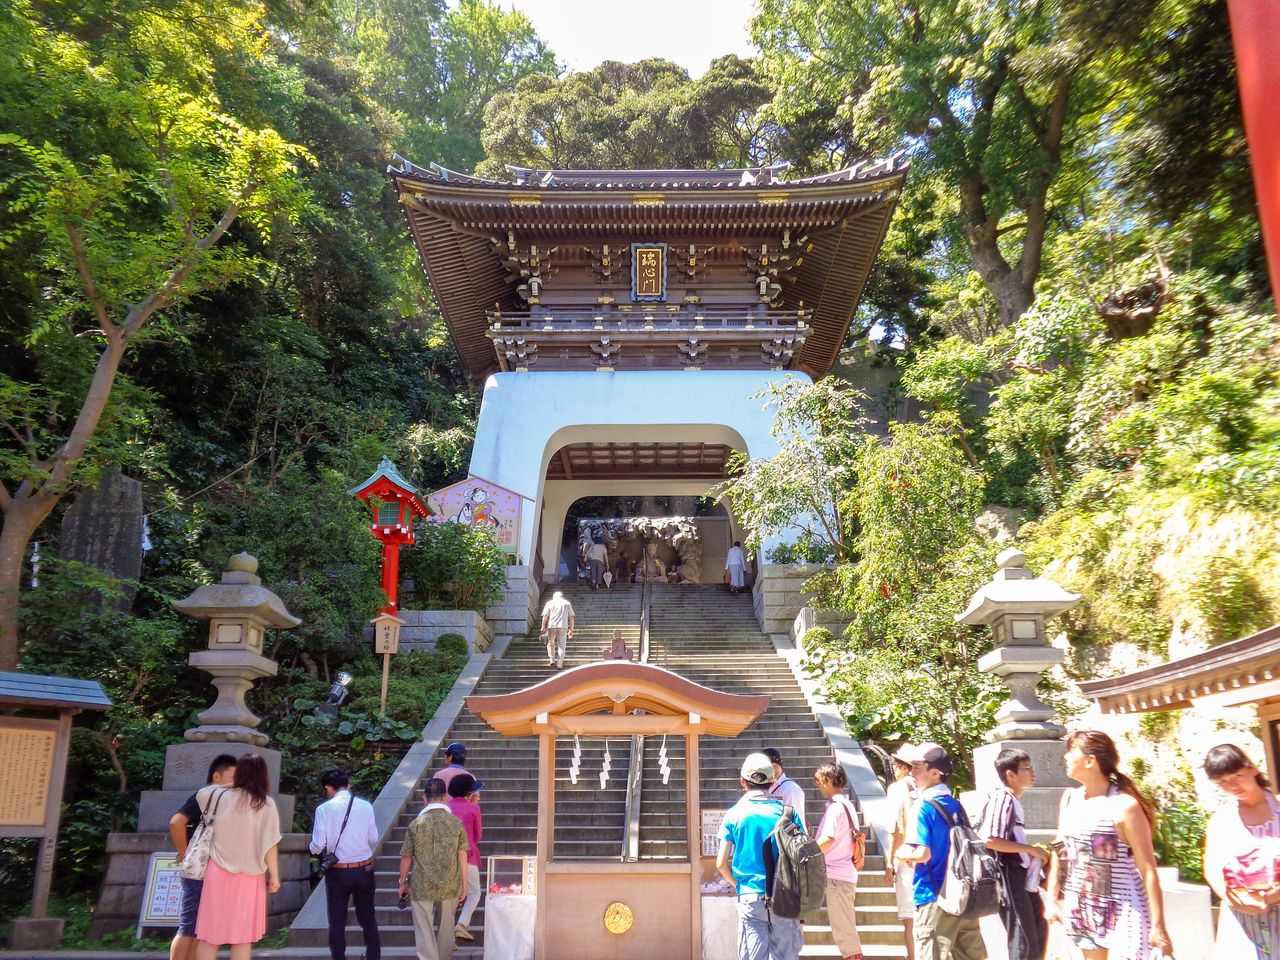 The gate of Enoshima Shrine is modeled on the mythical Ryūgū-jō, the undersea palace of Japanese folklore. (Courtesy Enoshima Shrine)